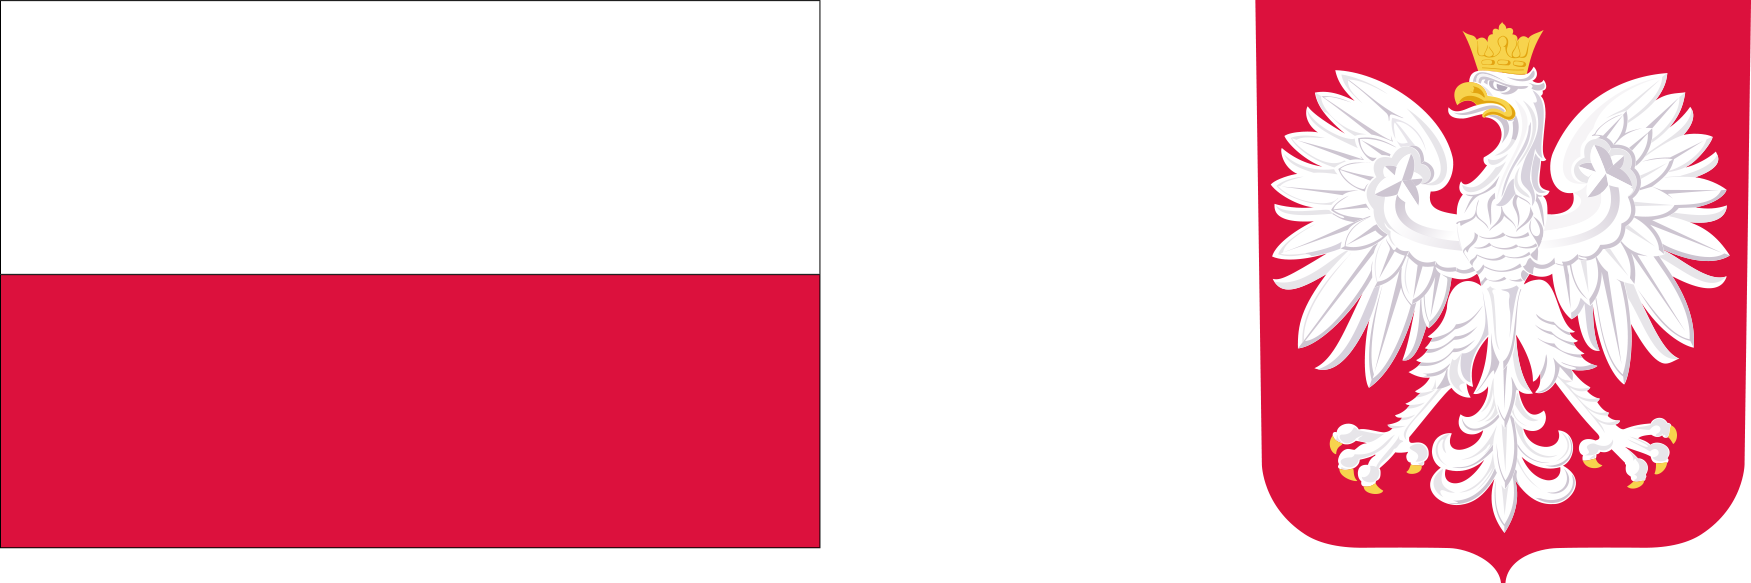 Od lewej: flaga oraz godło Polski